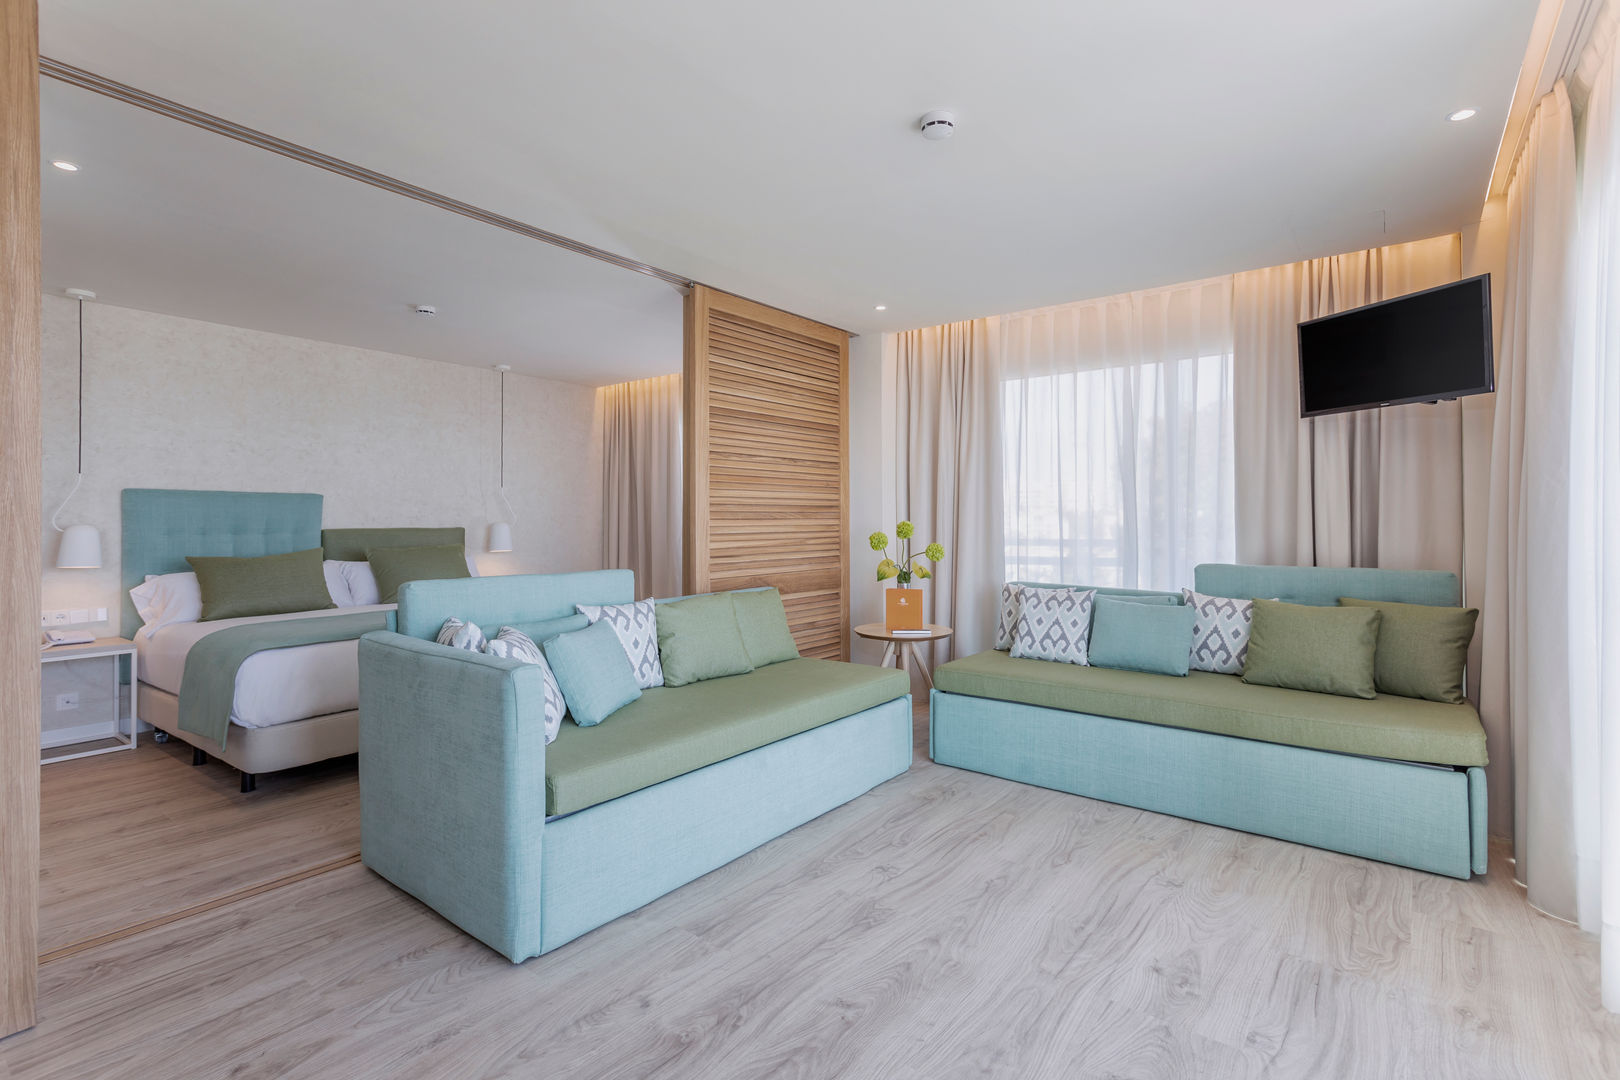 Suites Hotel Palmasol DyD Interiorismo - Chelo Alcañíz Espacios comerciales Derivados de madera Transparente Hoteles